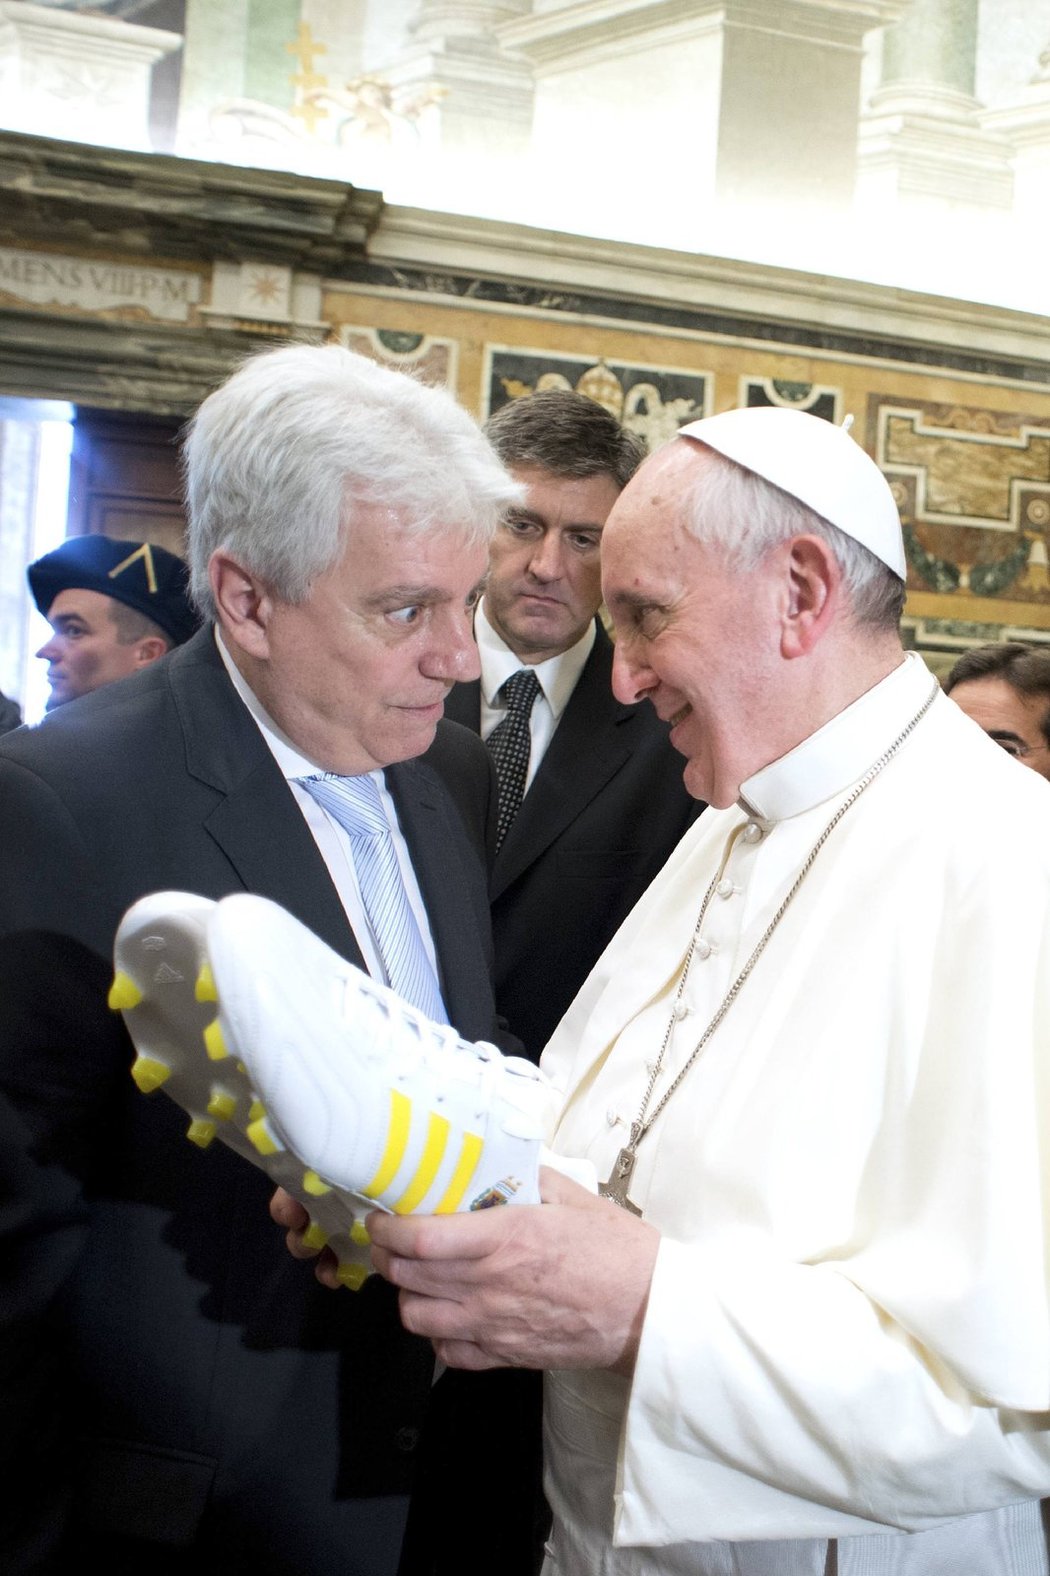 Člen argentinské výpravy předává dárek papeži Františkovi na audienci ve Vatikánu